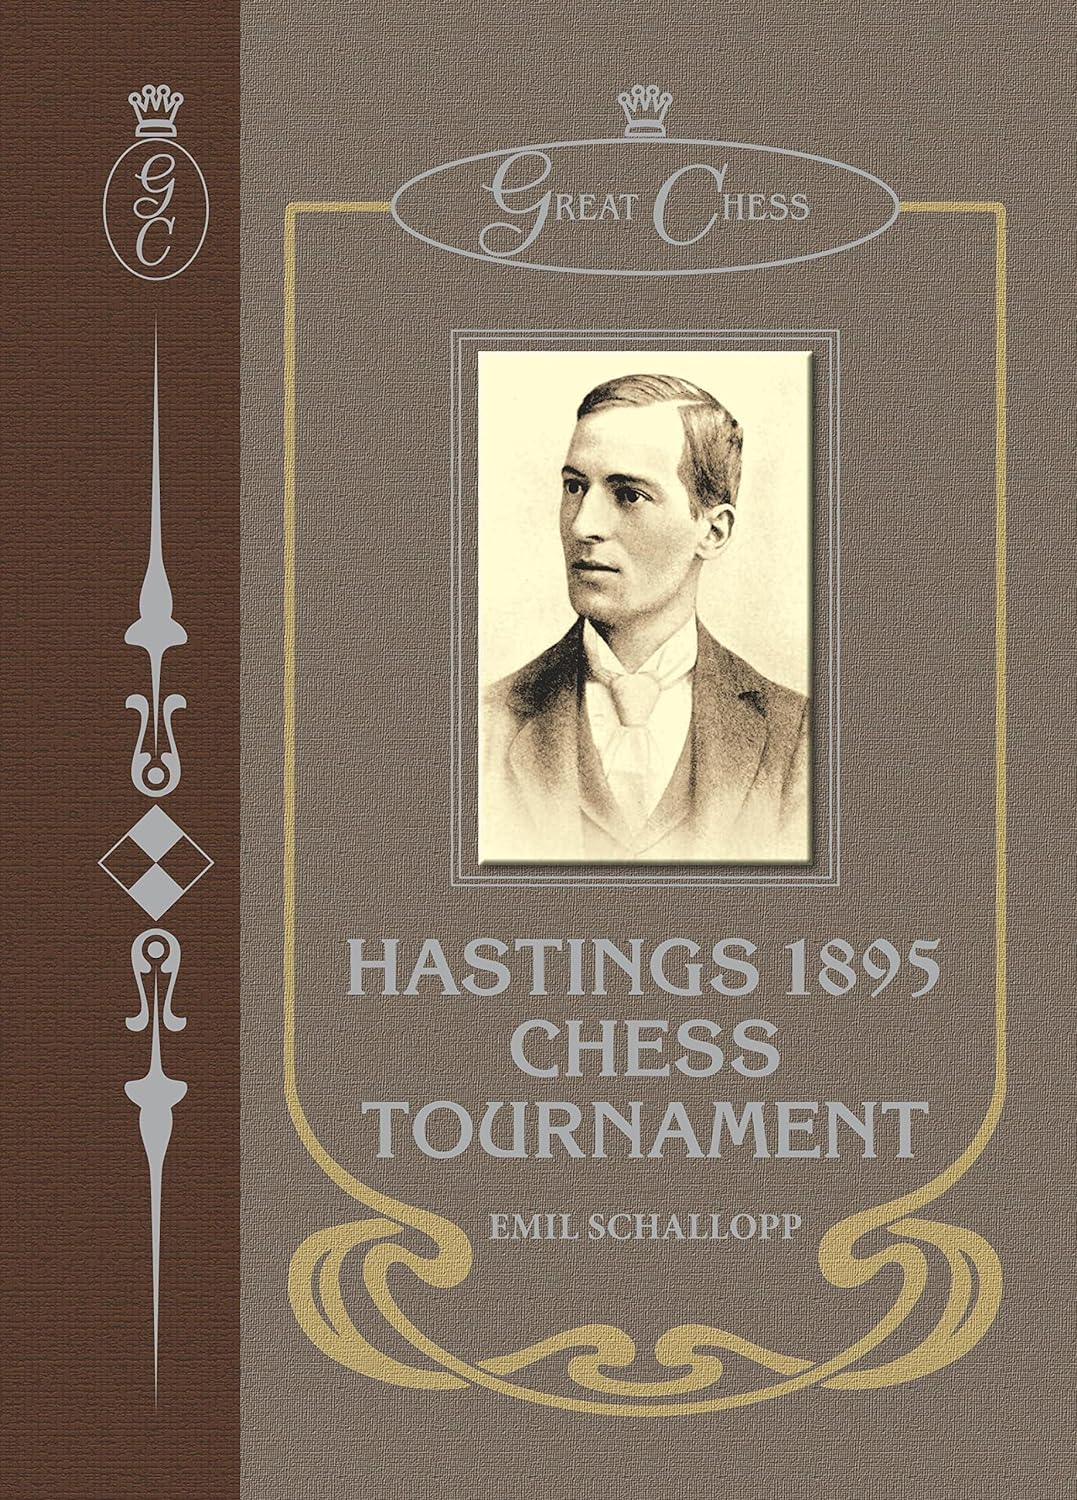 Hastings 1895 Chess Tournament